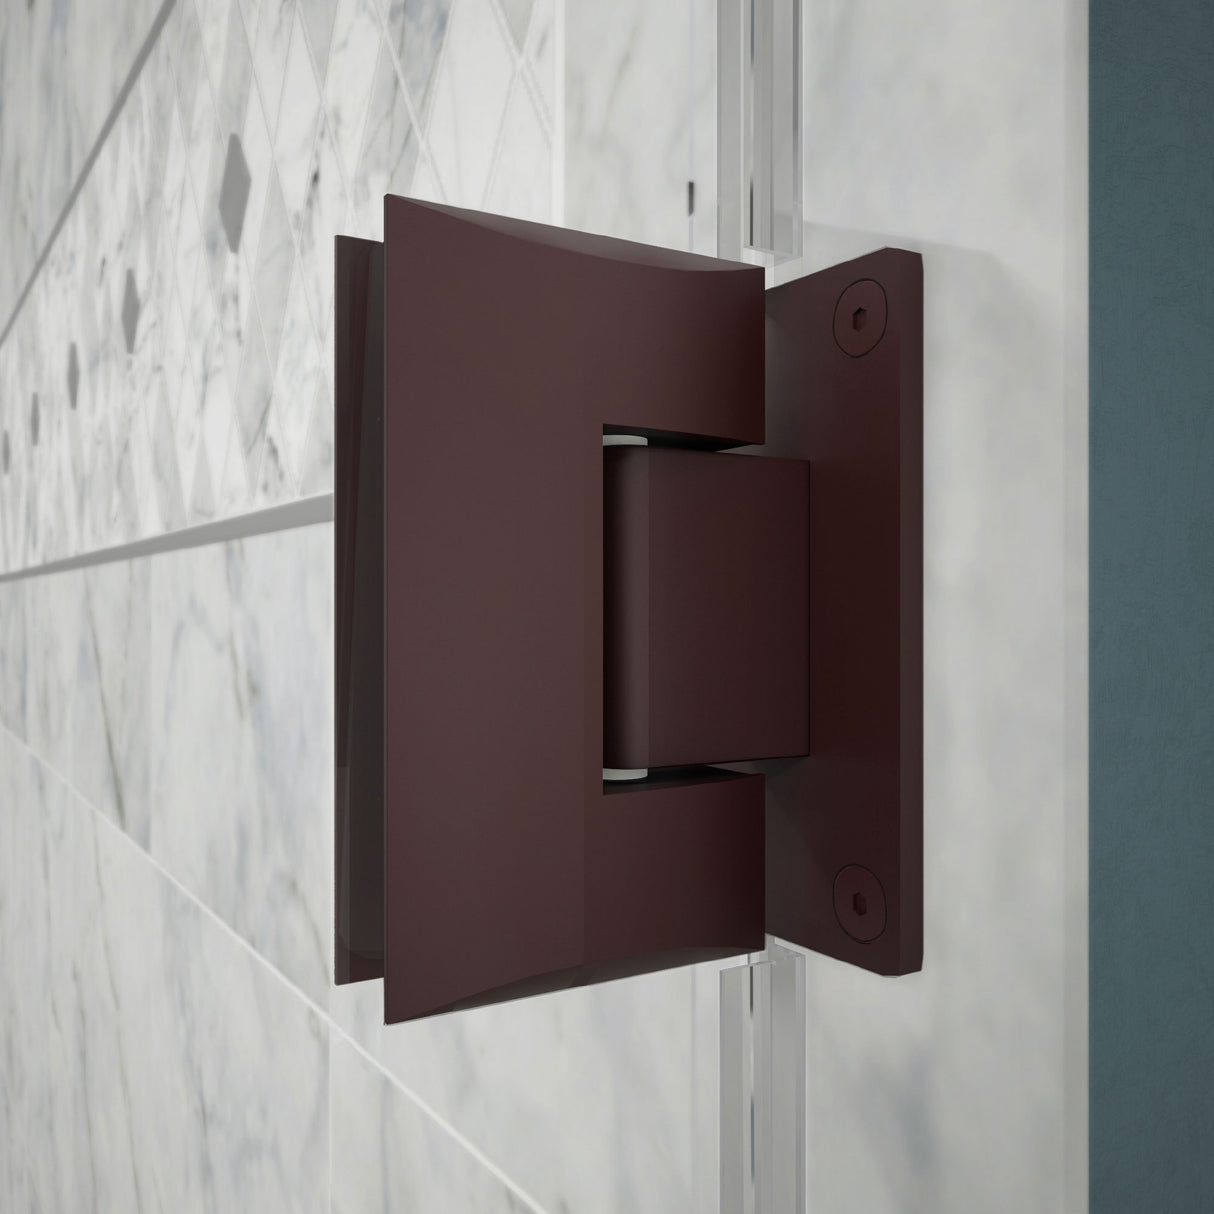 DreamLine Unidoor 41-42 in. W x 72 in. H Frameless Hinged Shower Door with Shelves in Oil Rubbed Bronze